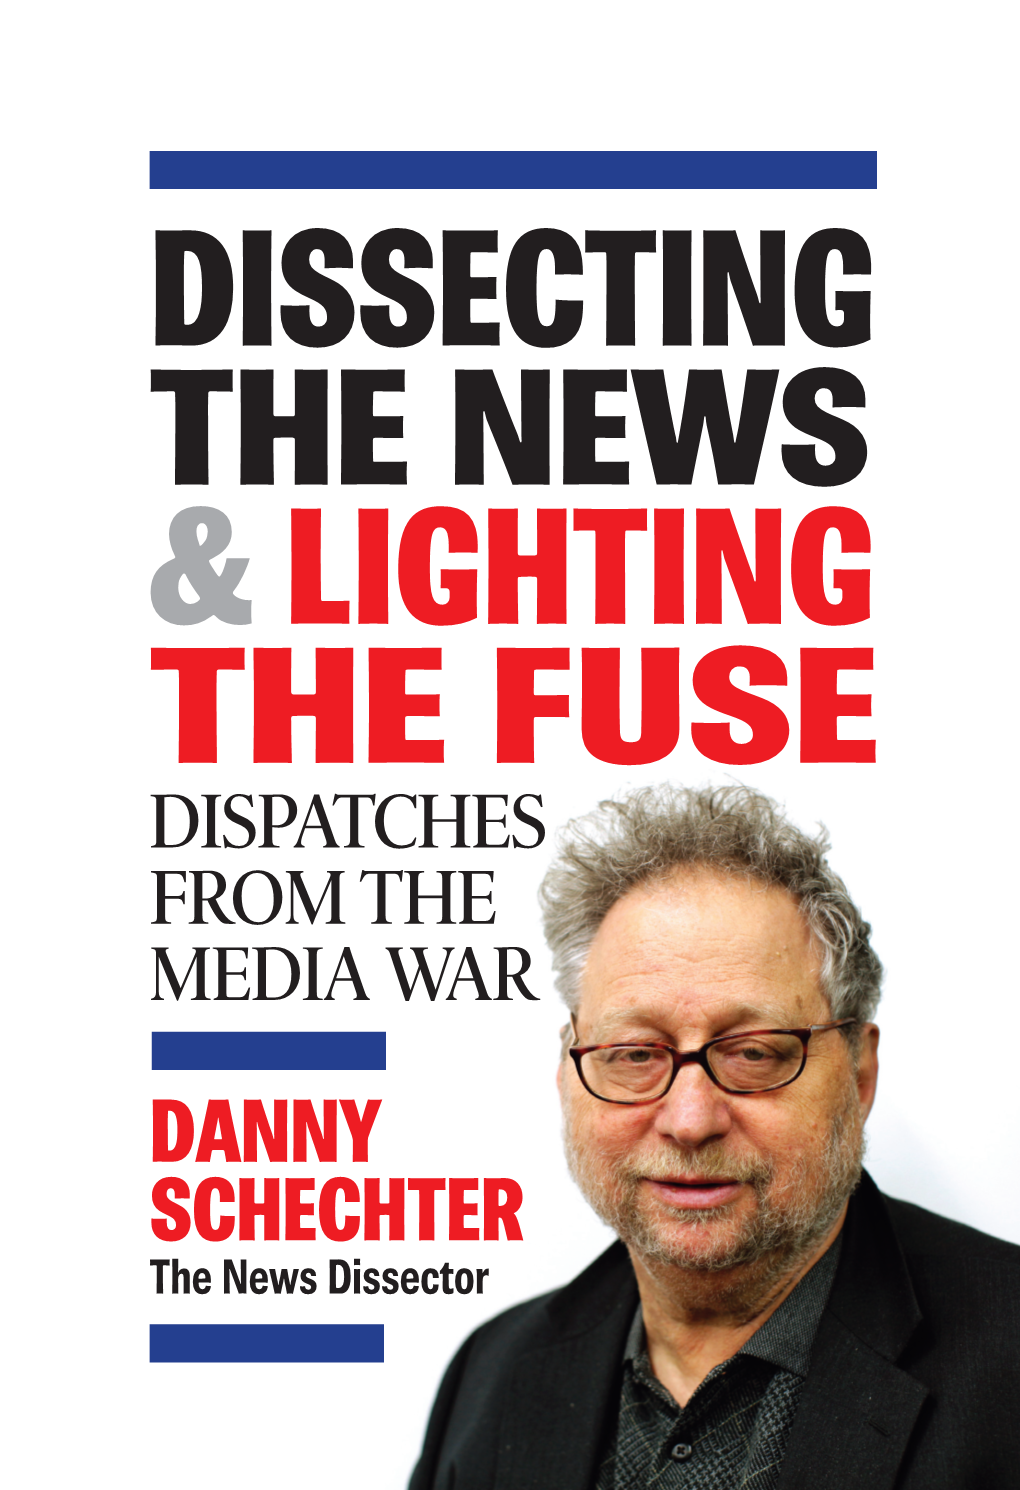 Danny Schechter the News Dissector 1